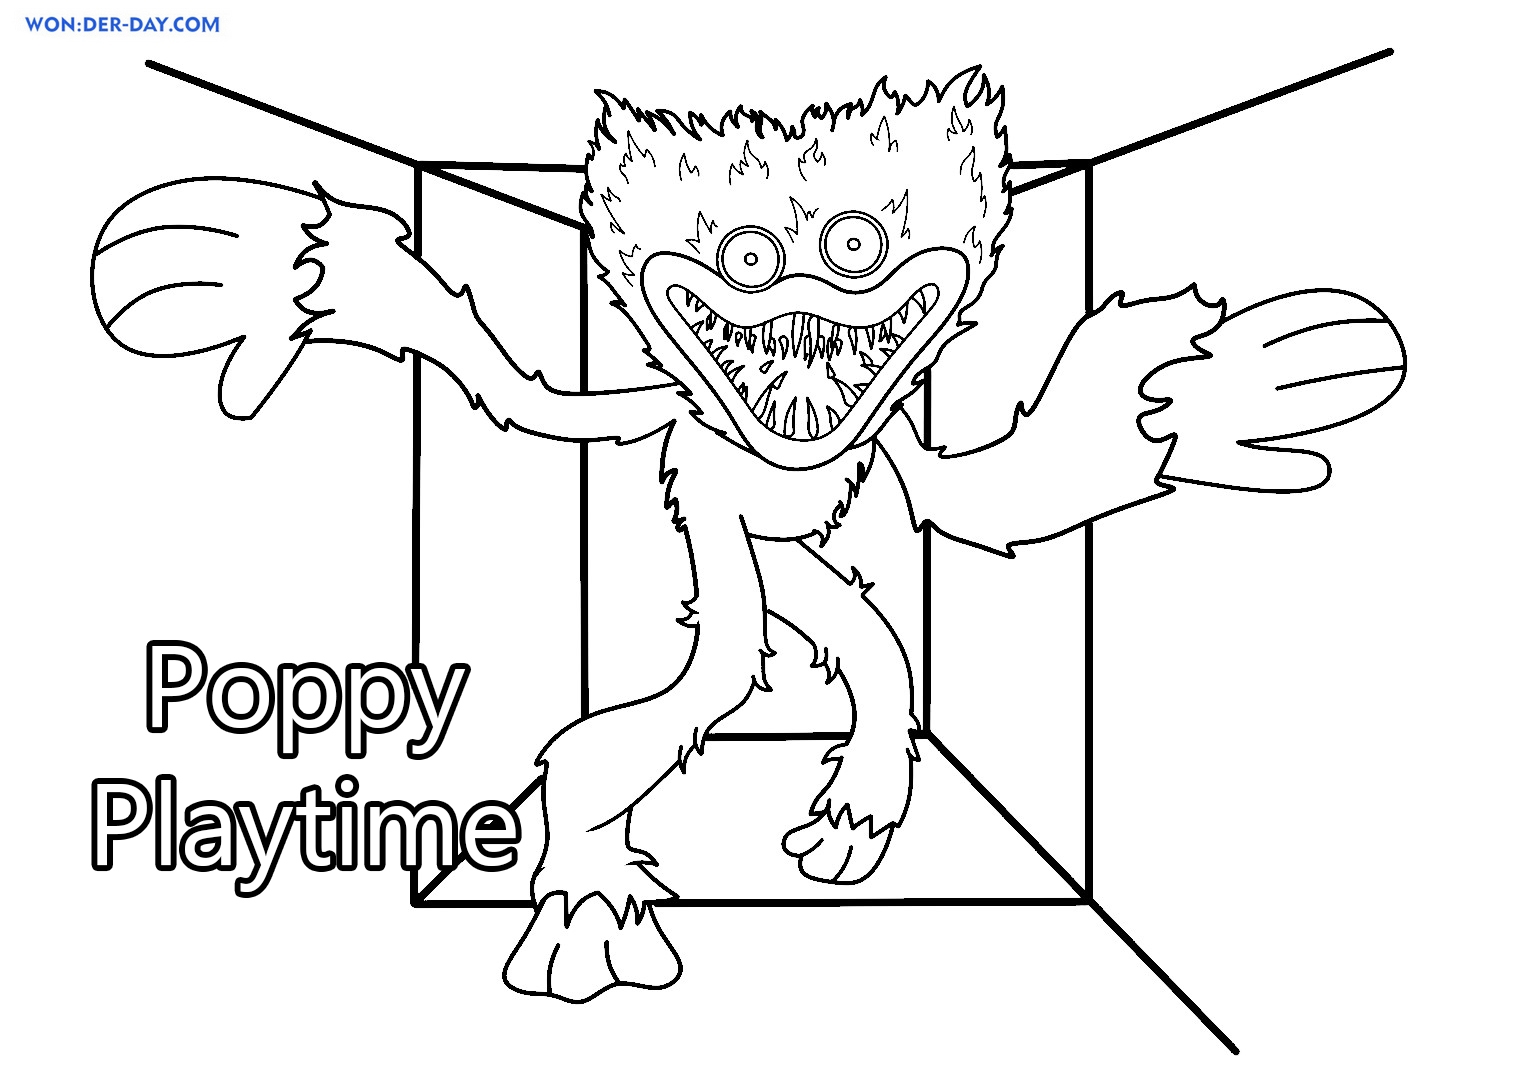 Нарисовать кота дремота из poppy playtime 3. Раскраскапопиплейтайм. Поппи Плейтайм раскраска. Раскраска монстры. Поппи Плай тайм раскраска.